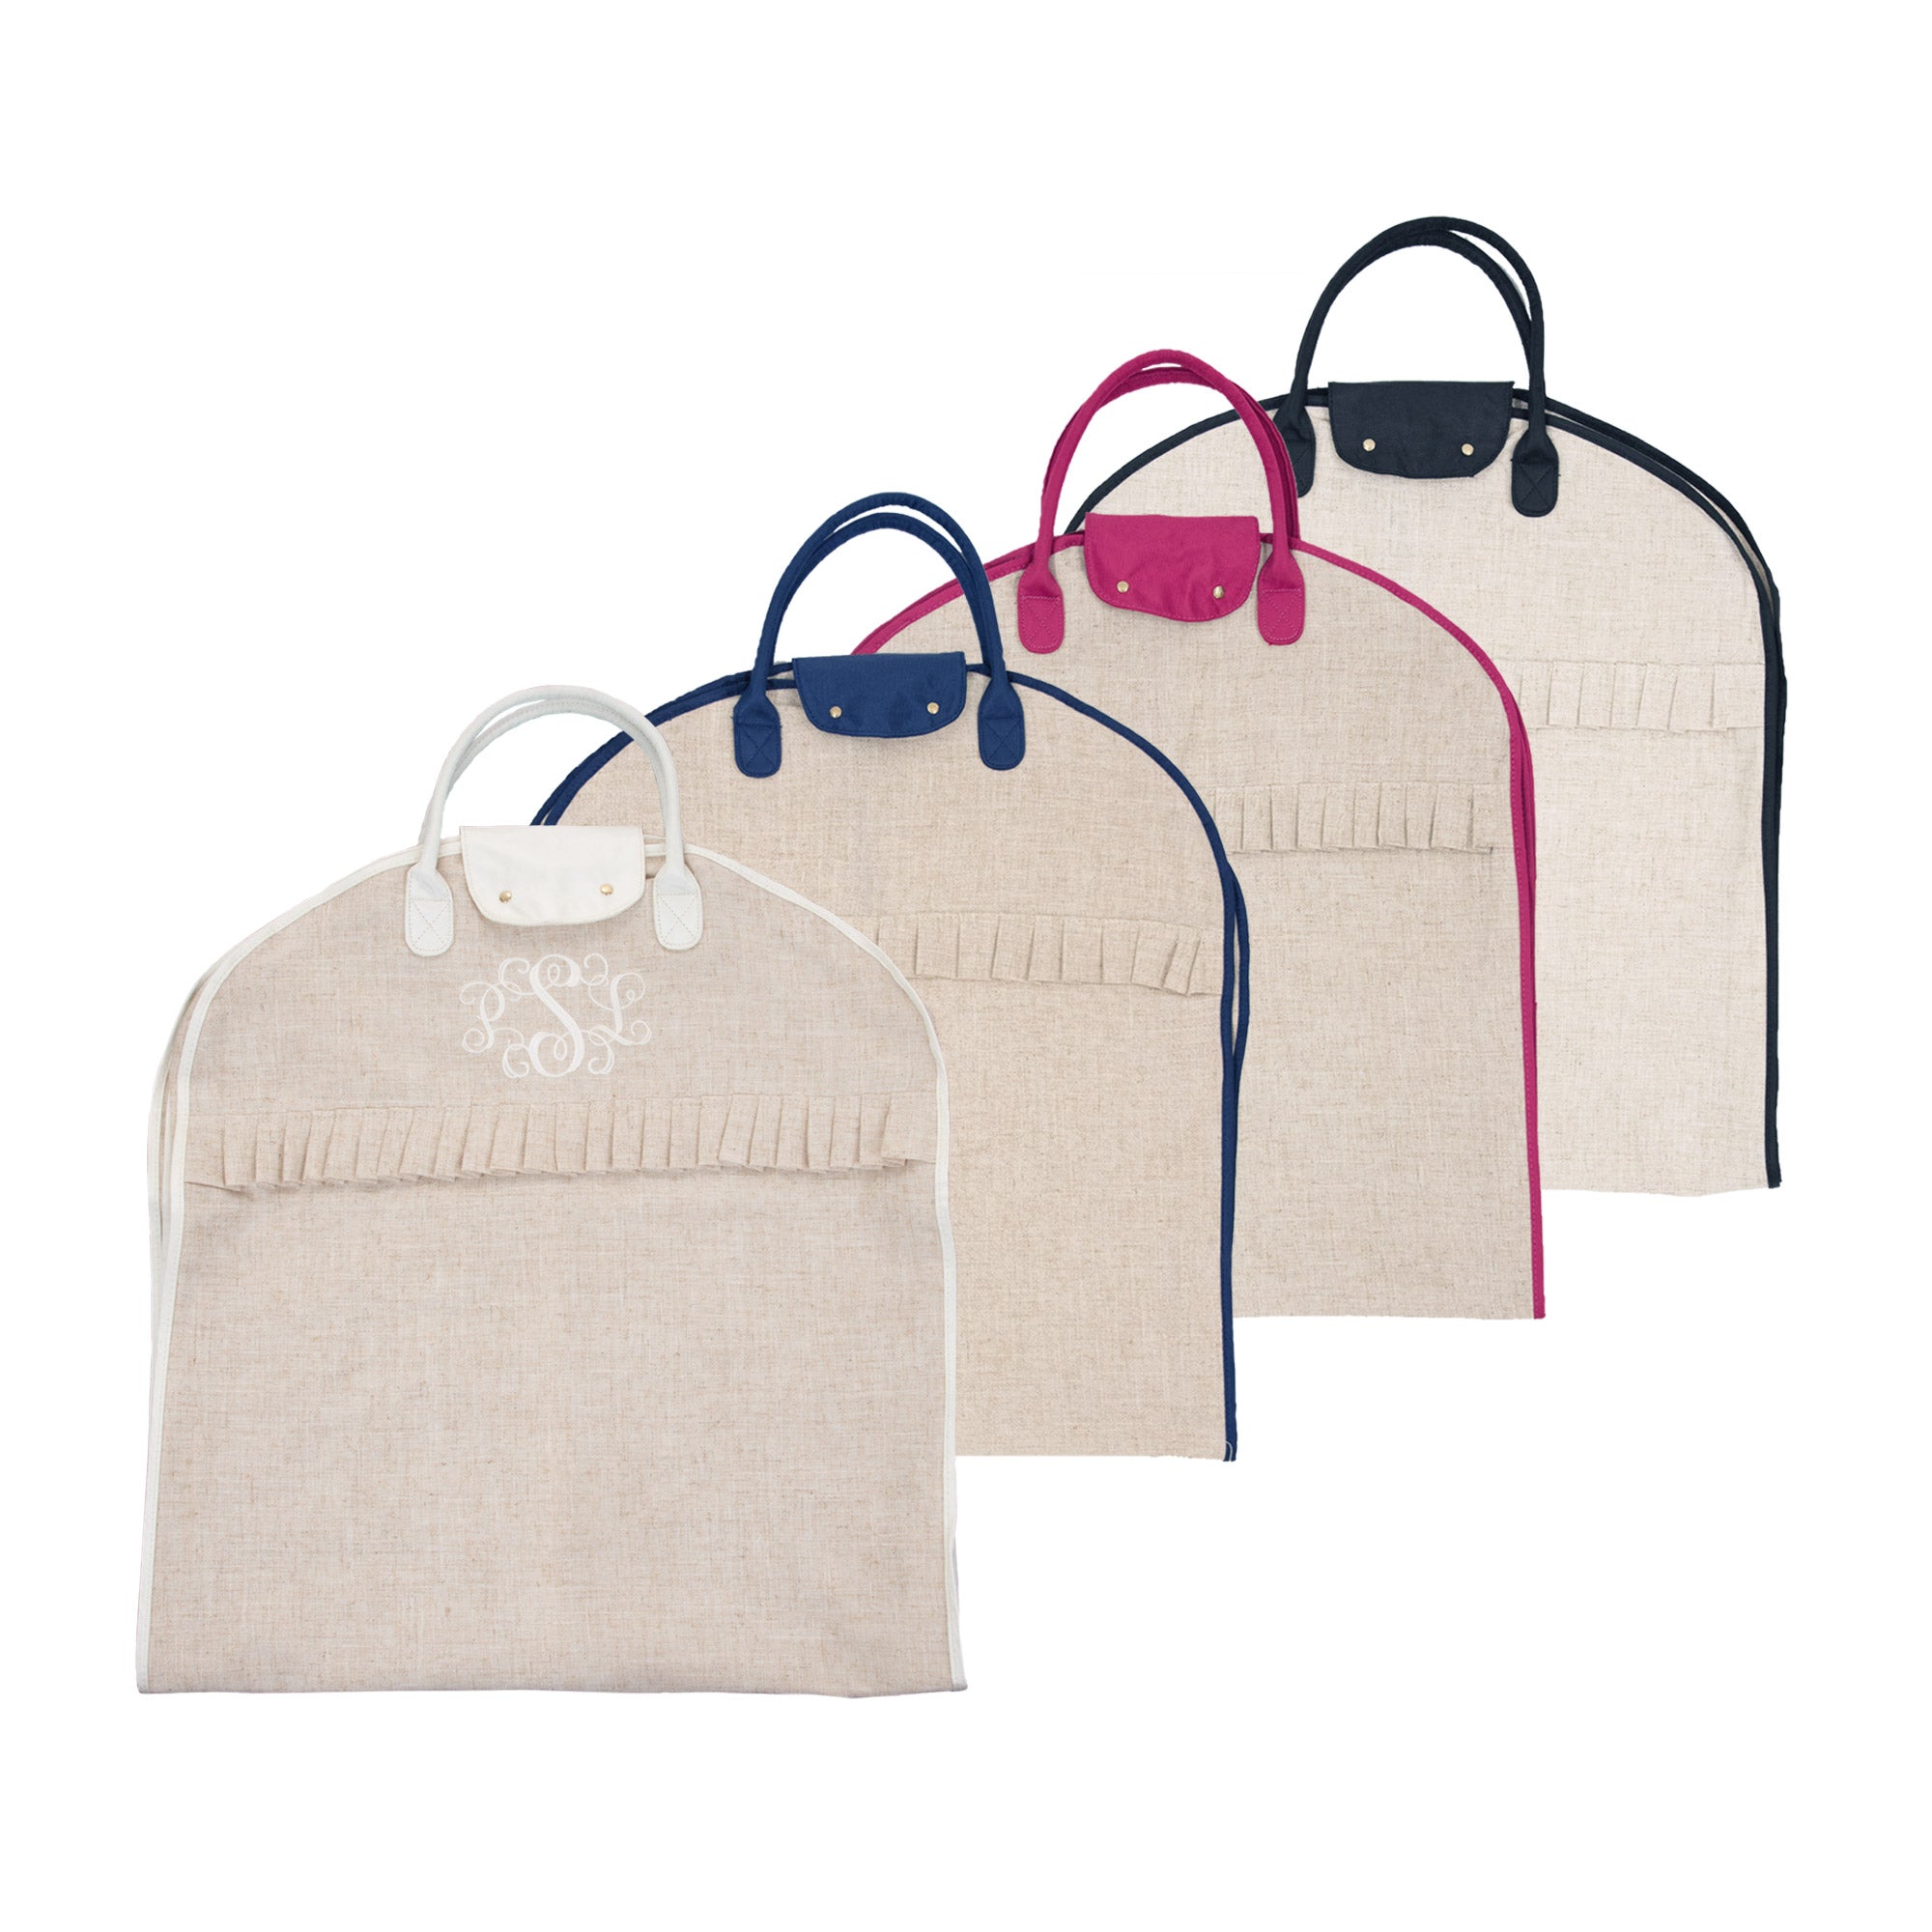 Monogram Garment Bags